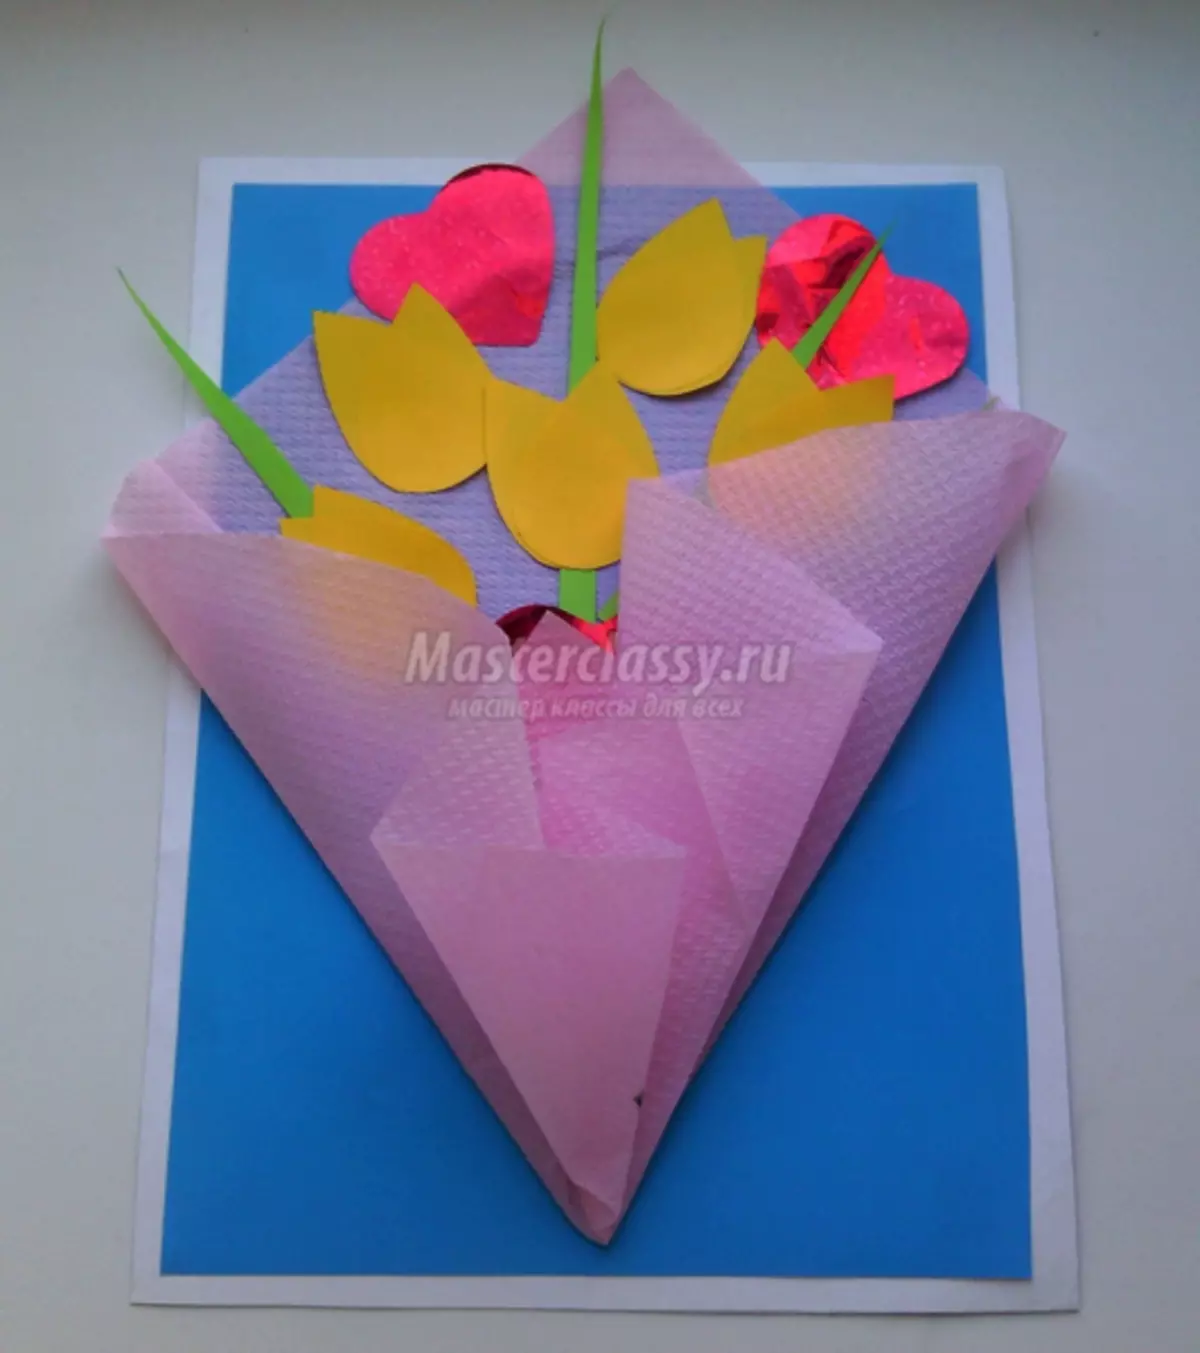 3月8日までに花を持つバルク紙カードを作る方法